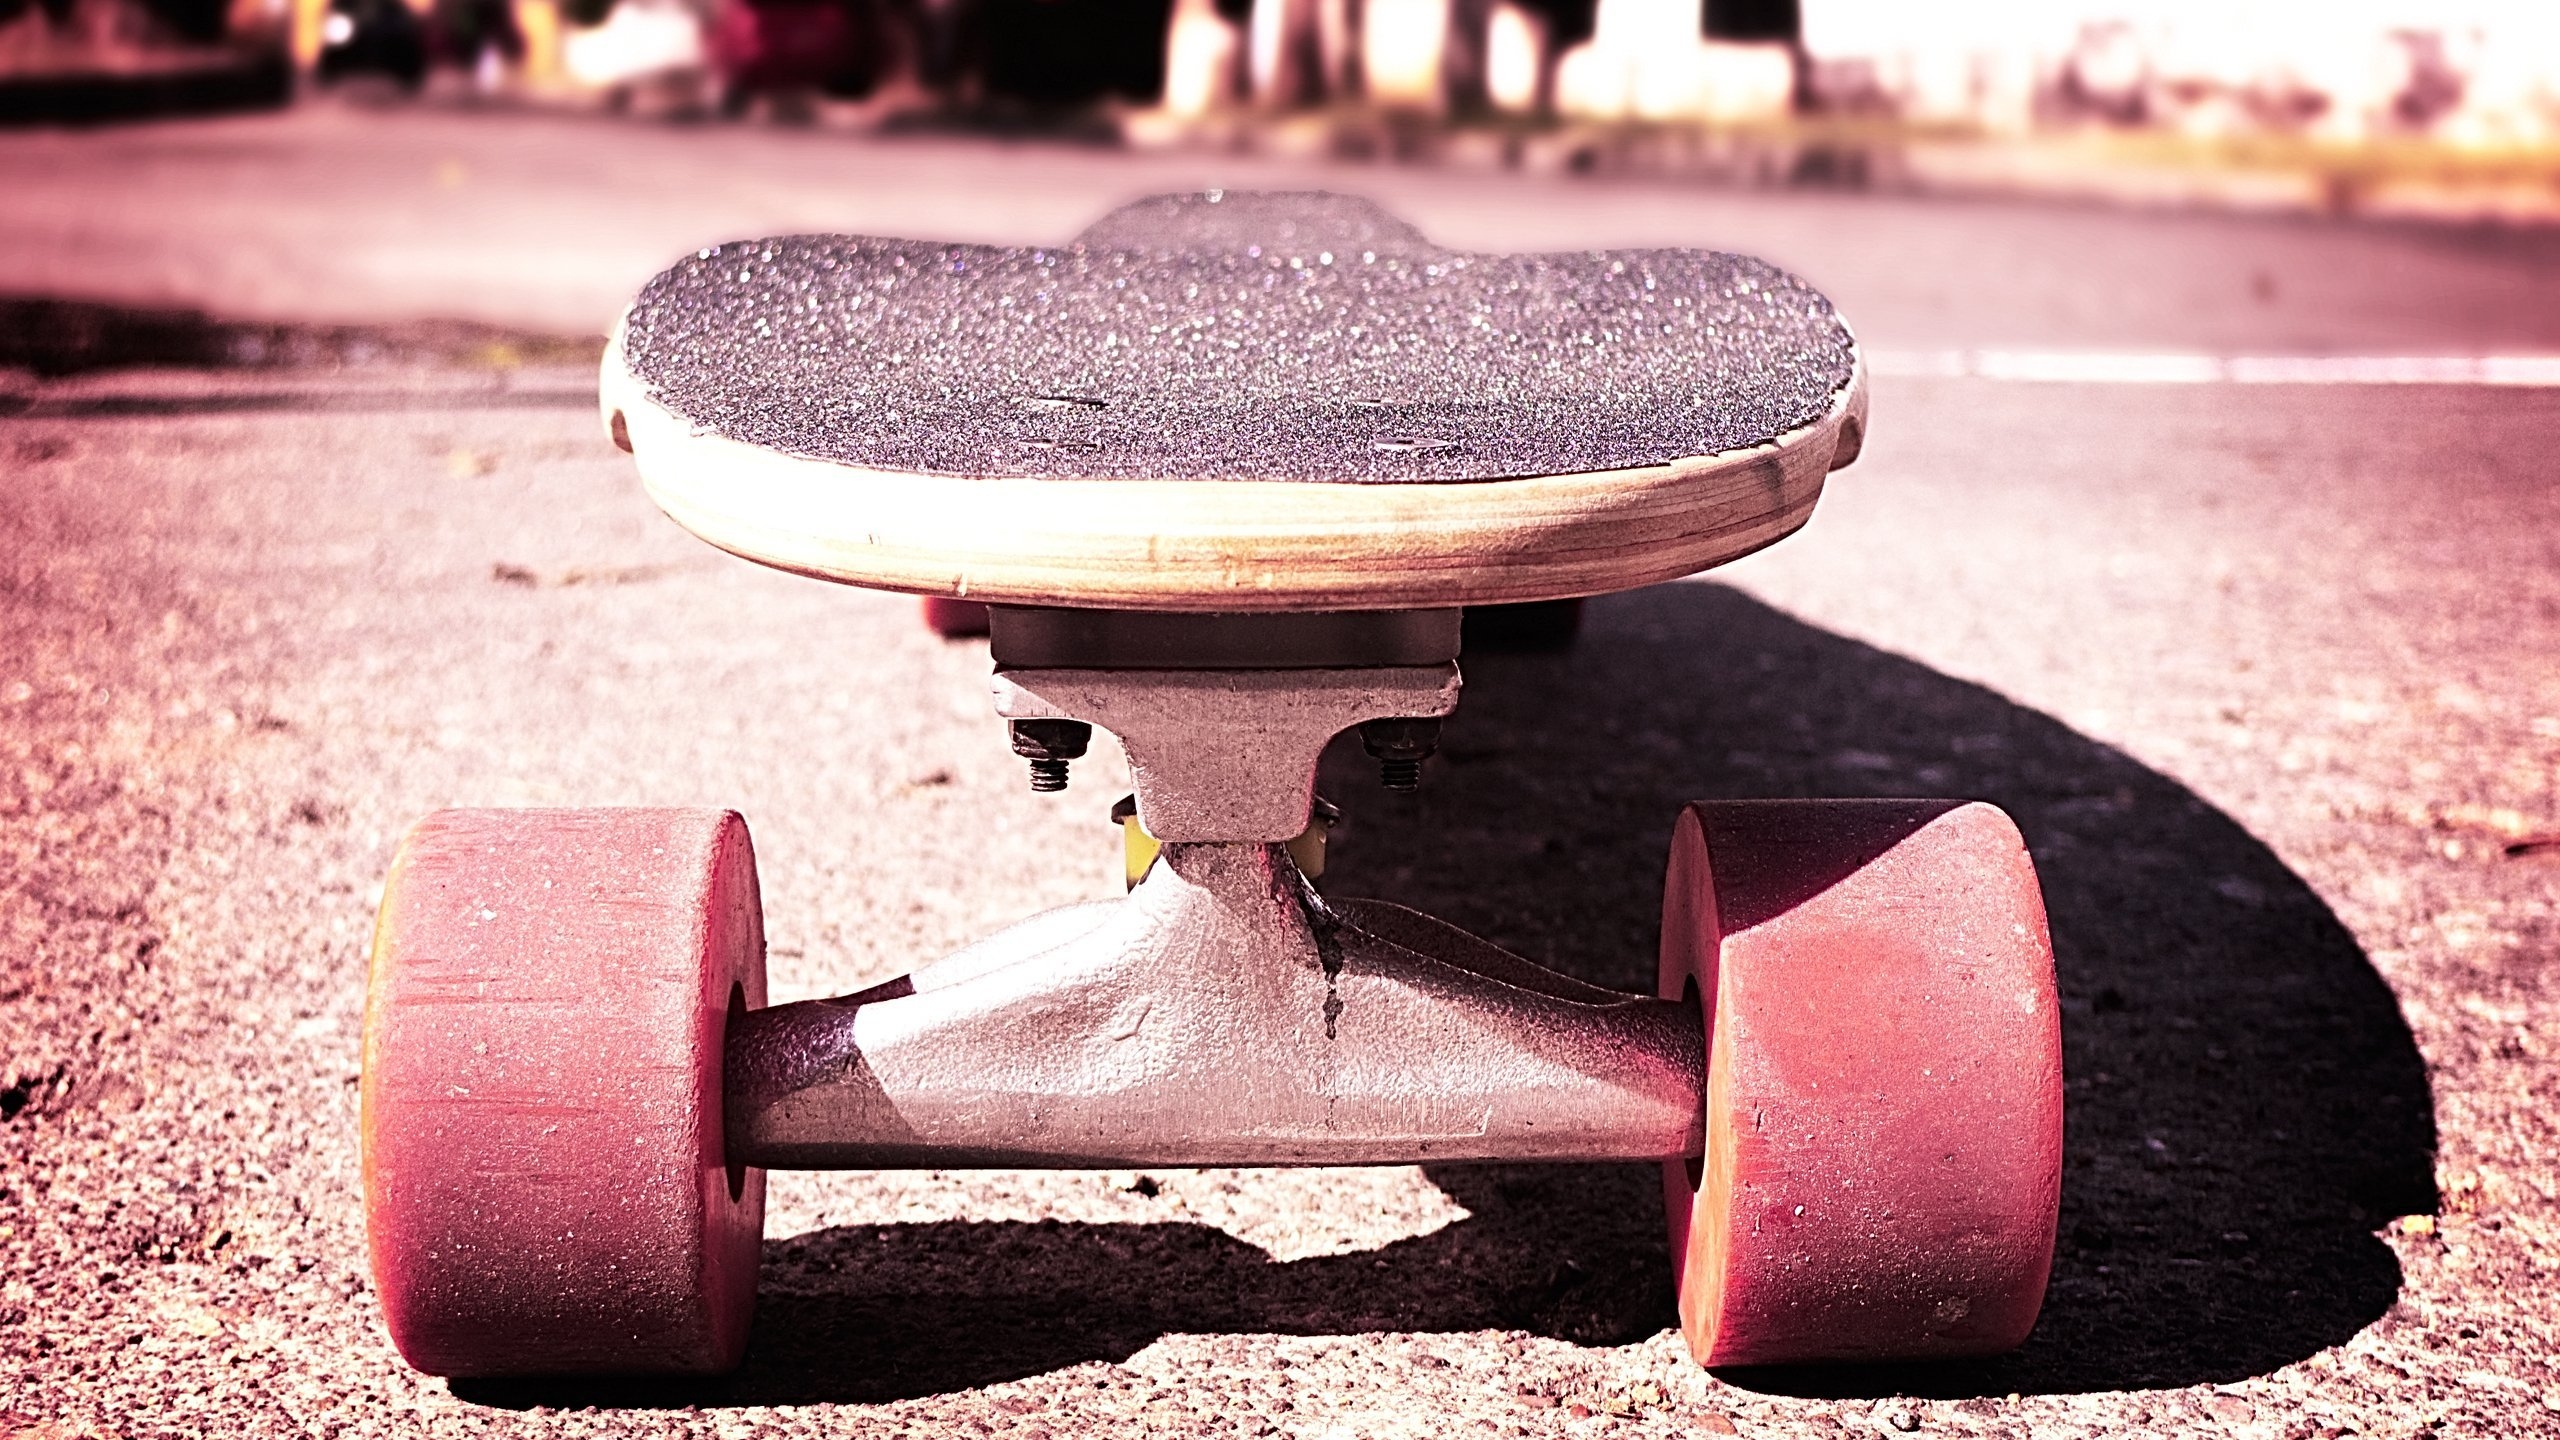 Cool skateboard for 2560x1440 HDTV resolution